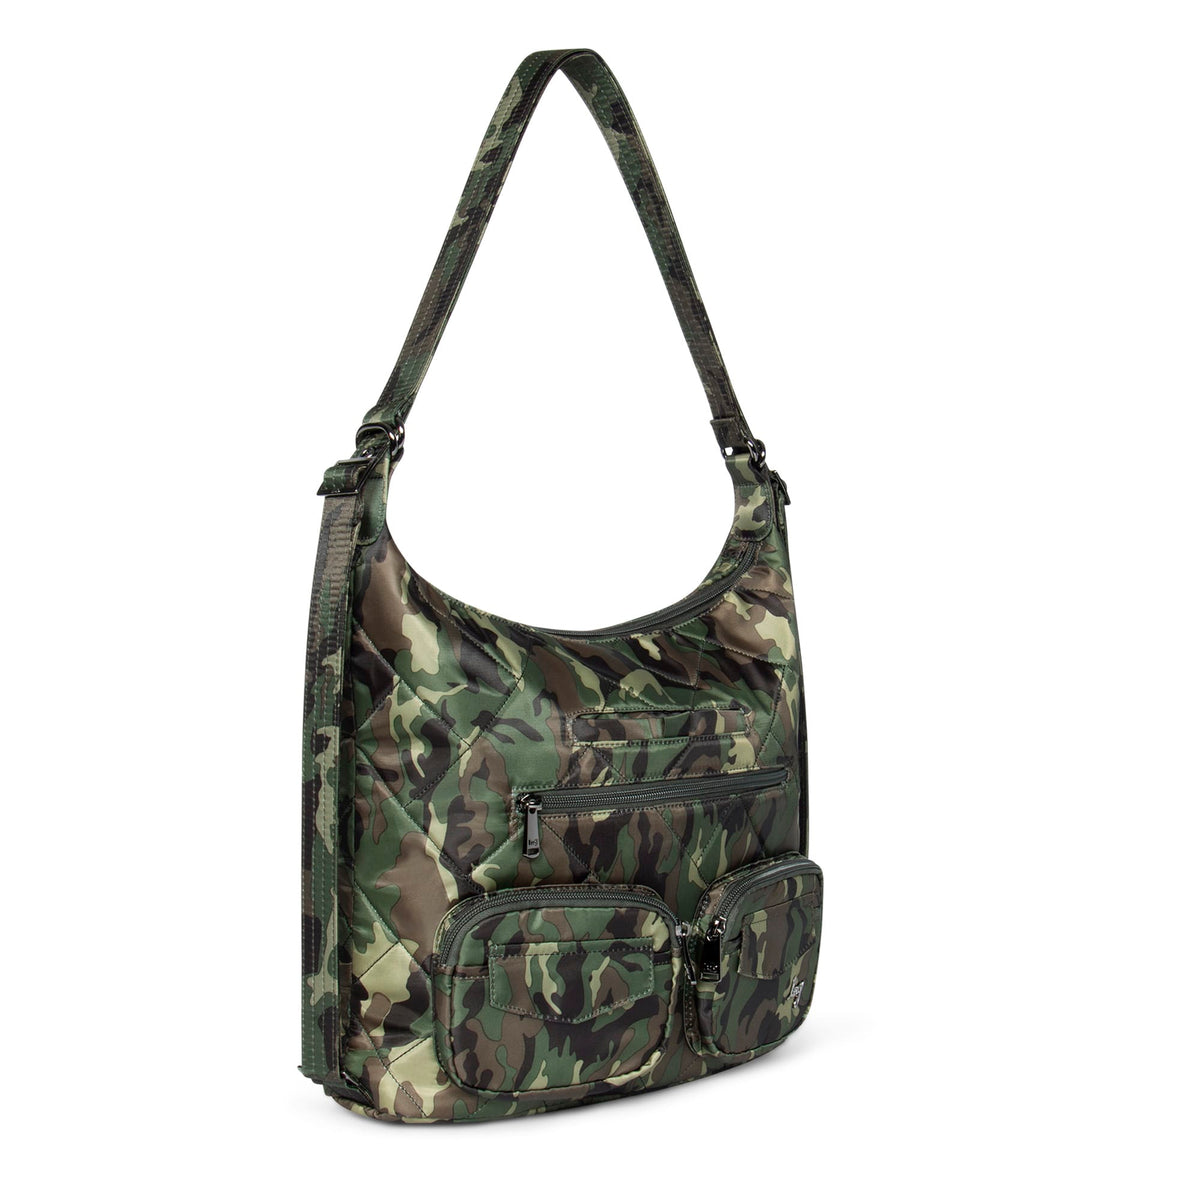 Zipliner 2 Convertible Hobo Bag